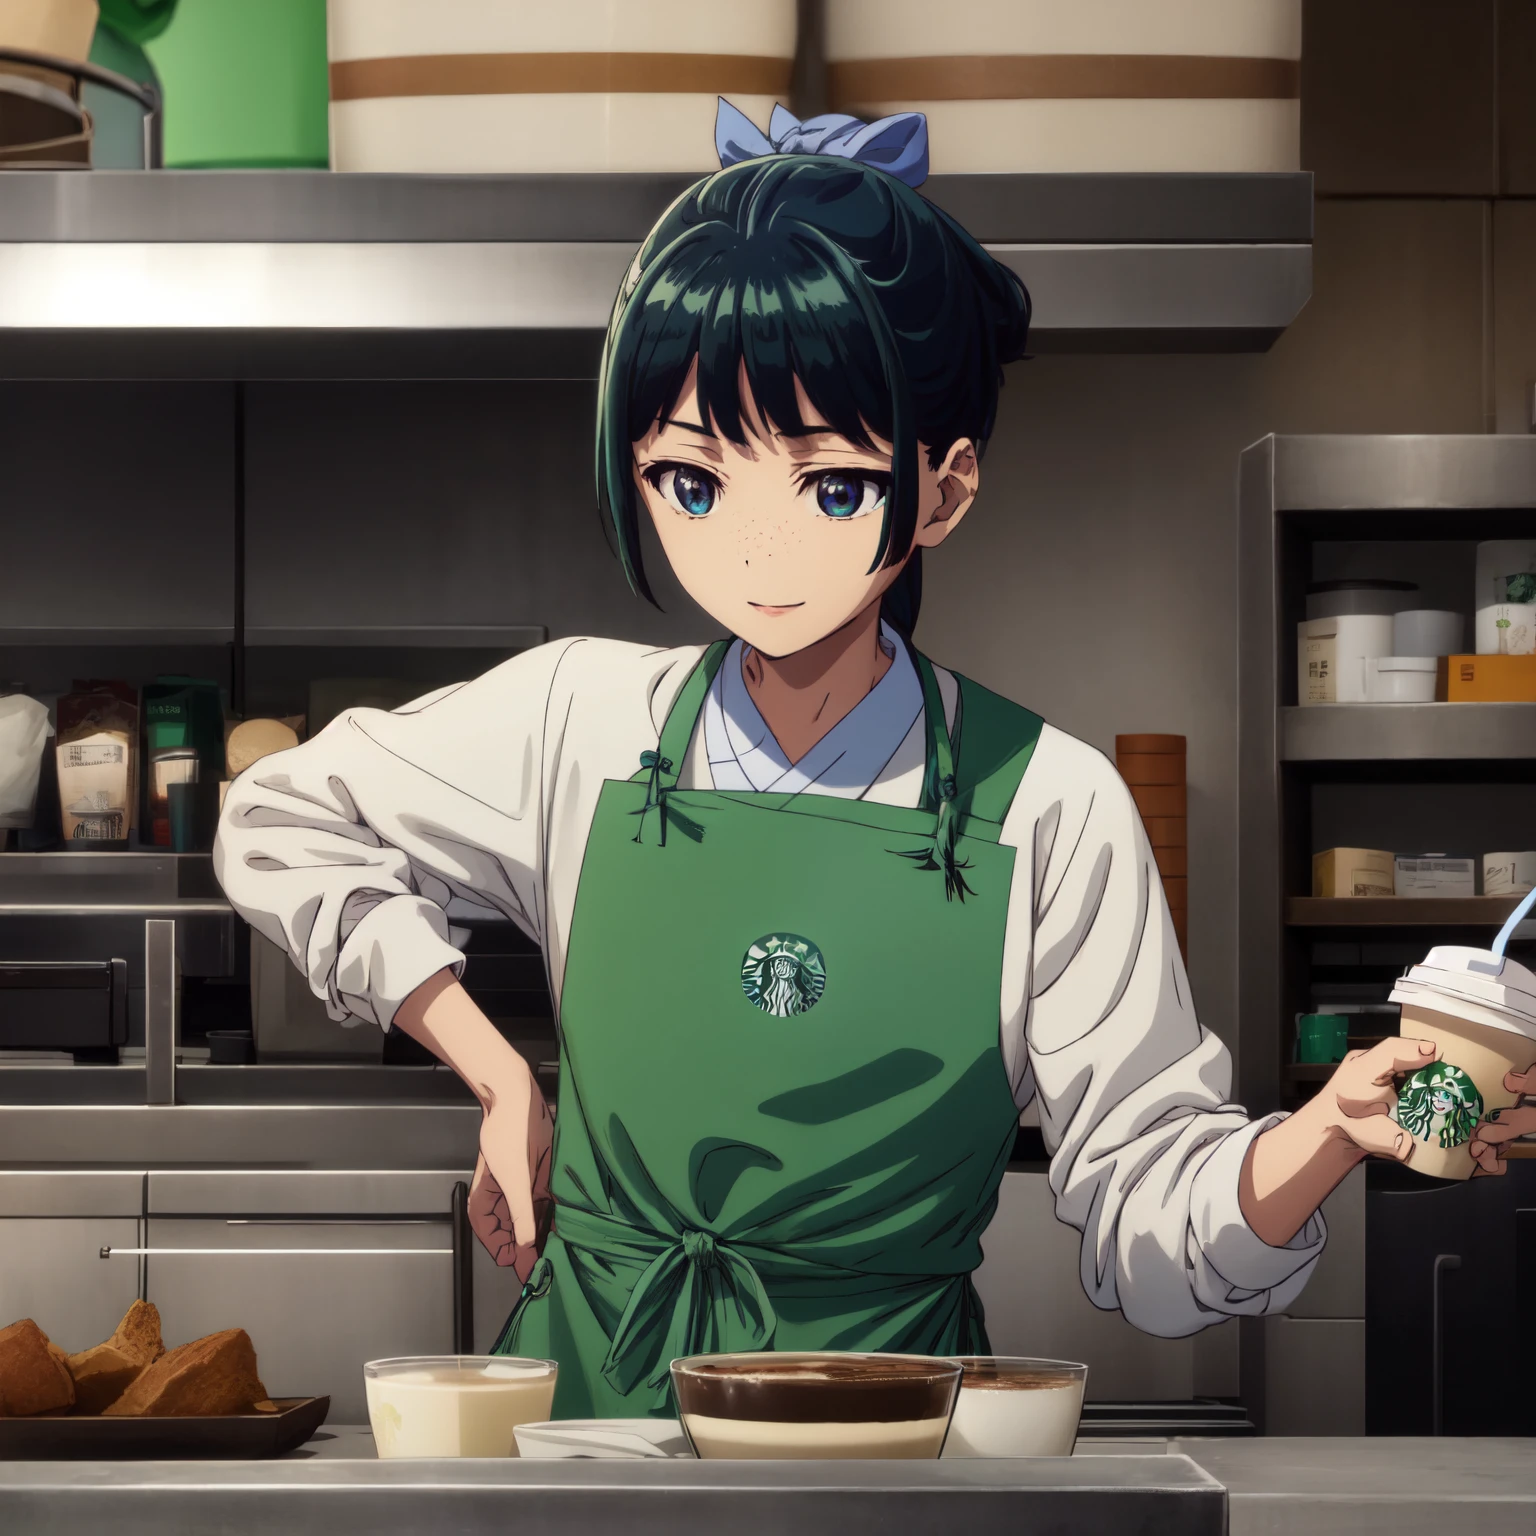 São magros、Penteado verde,、Apenas uma garota está na foto、Sorriso、tiro solo、Avental Starbucks、trabalho do starbucks,camisa branca、Bebendo café、